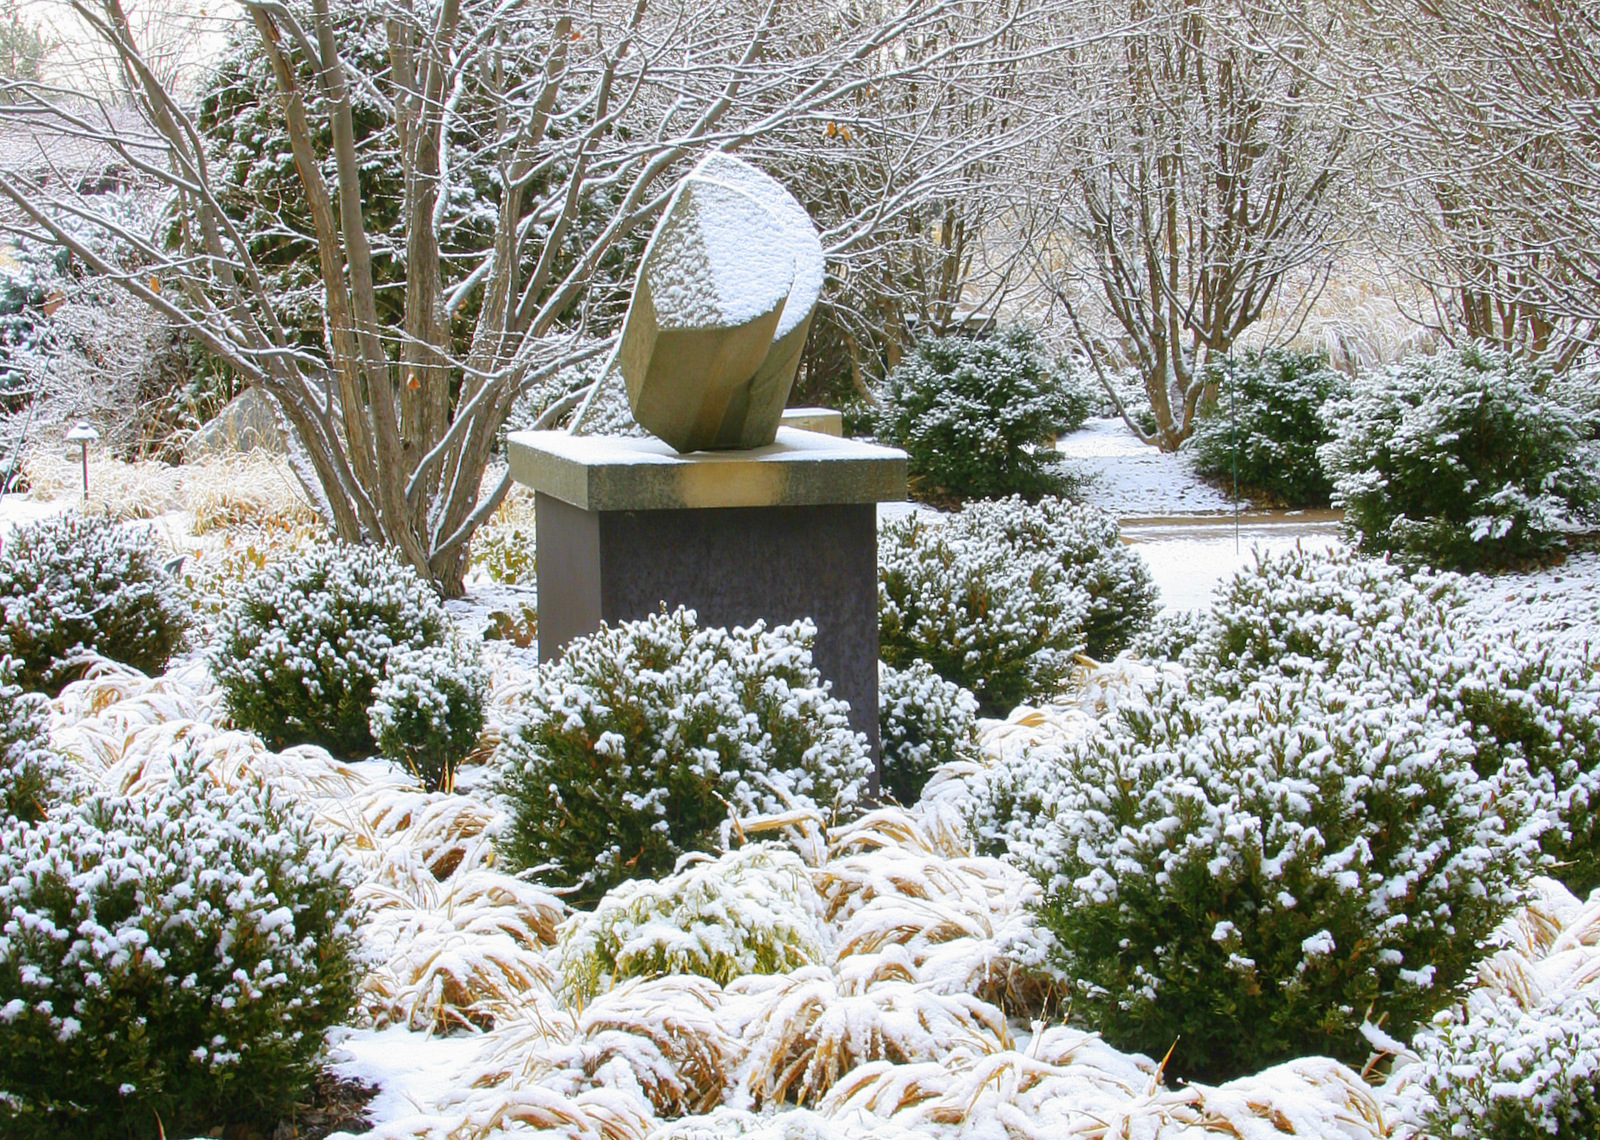 sculpture in garden in winter